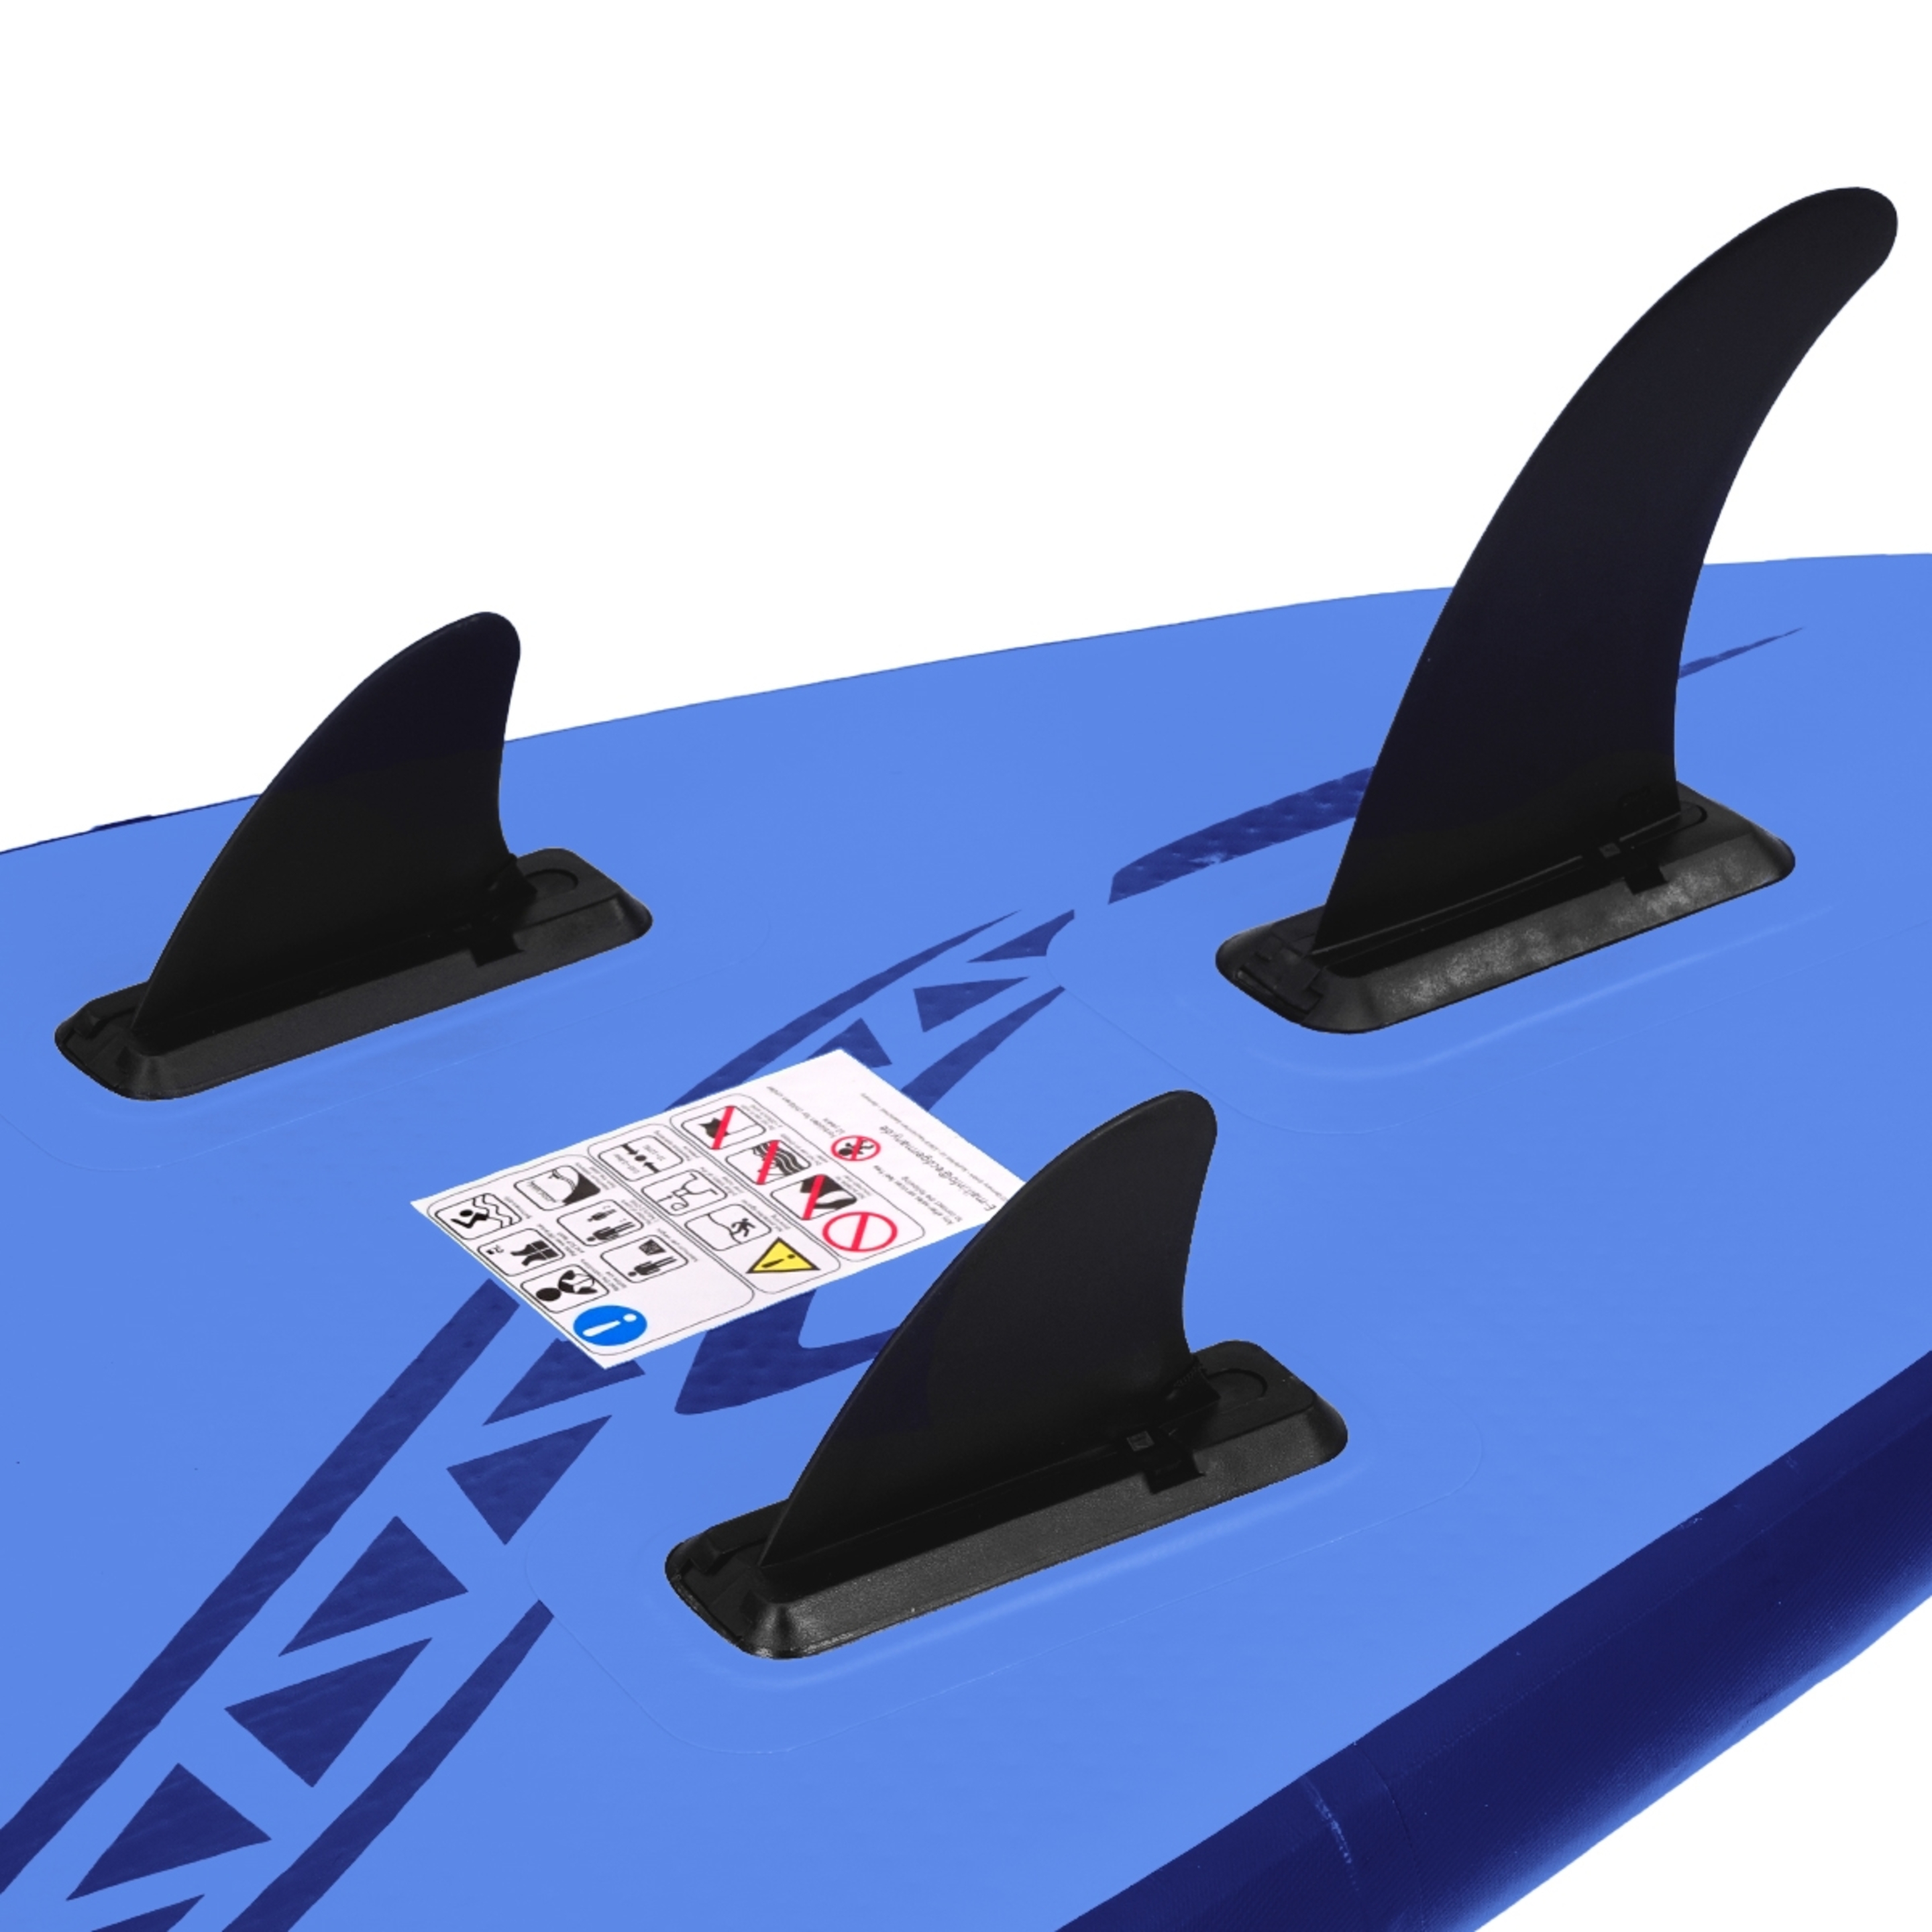 Ecd-germany Tabla Hinchable De Paddle Surf Sup Con Accesorios - Azul - Una fantástica tabla allround  MKP